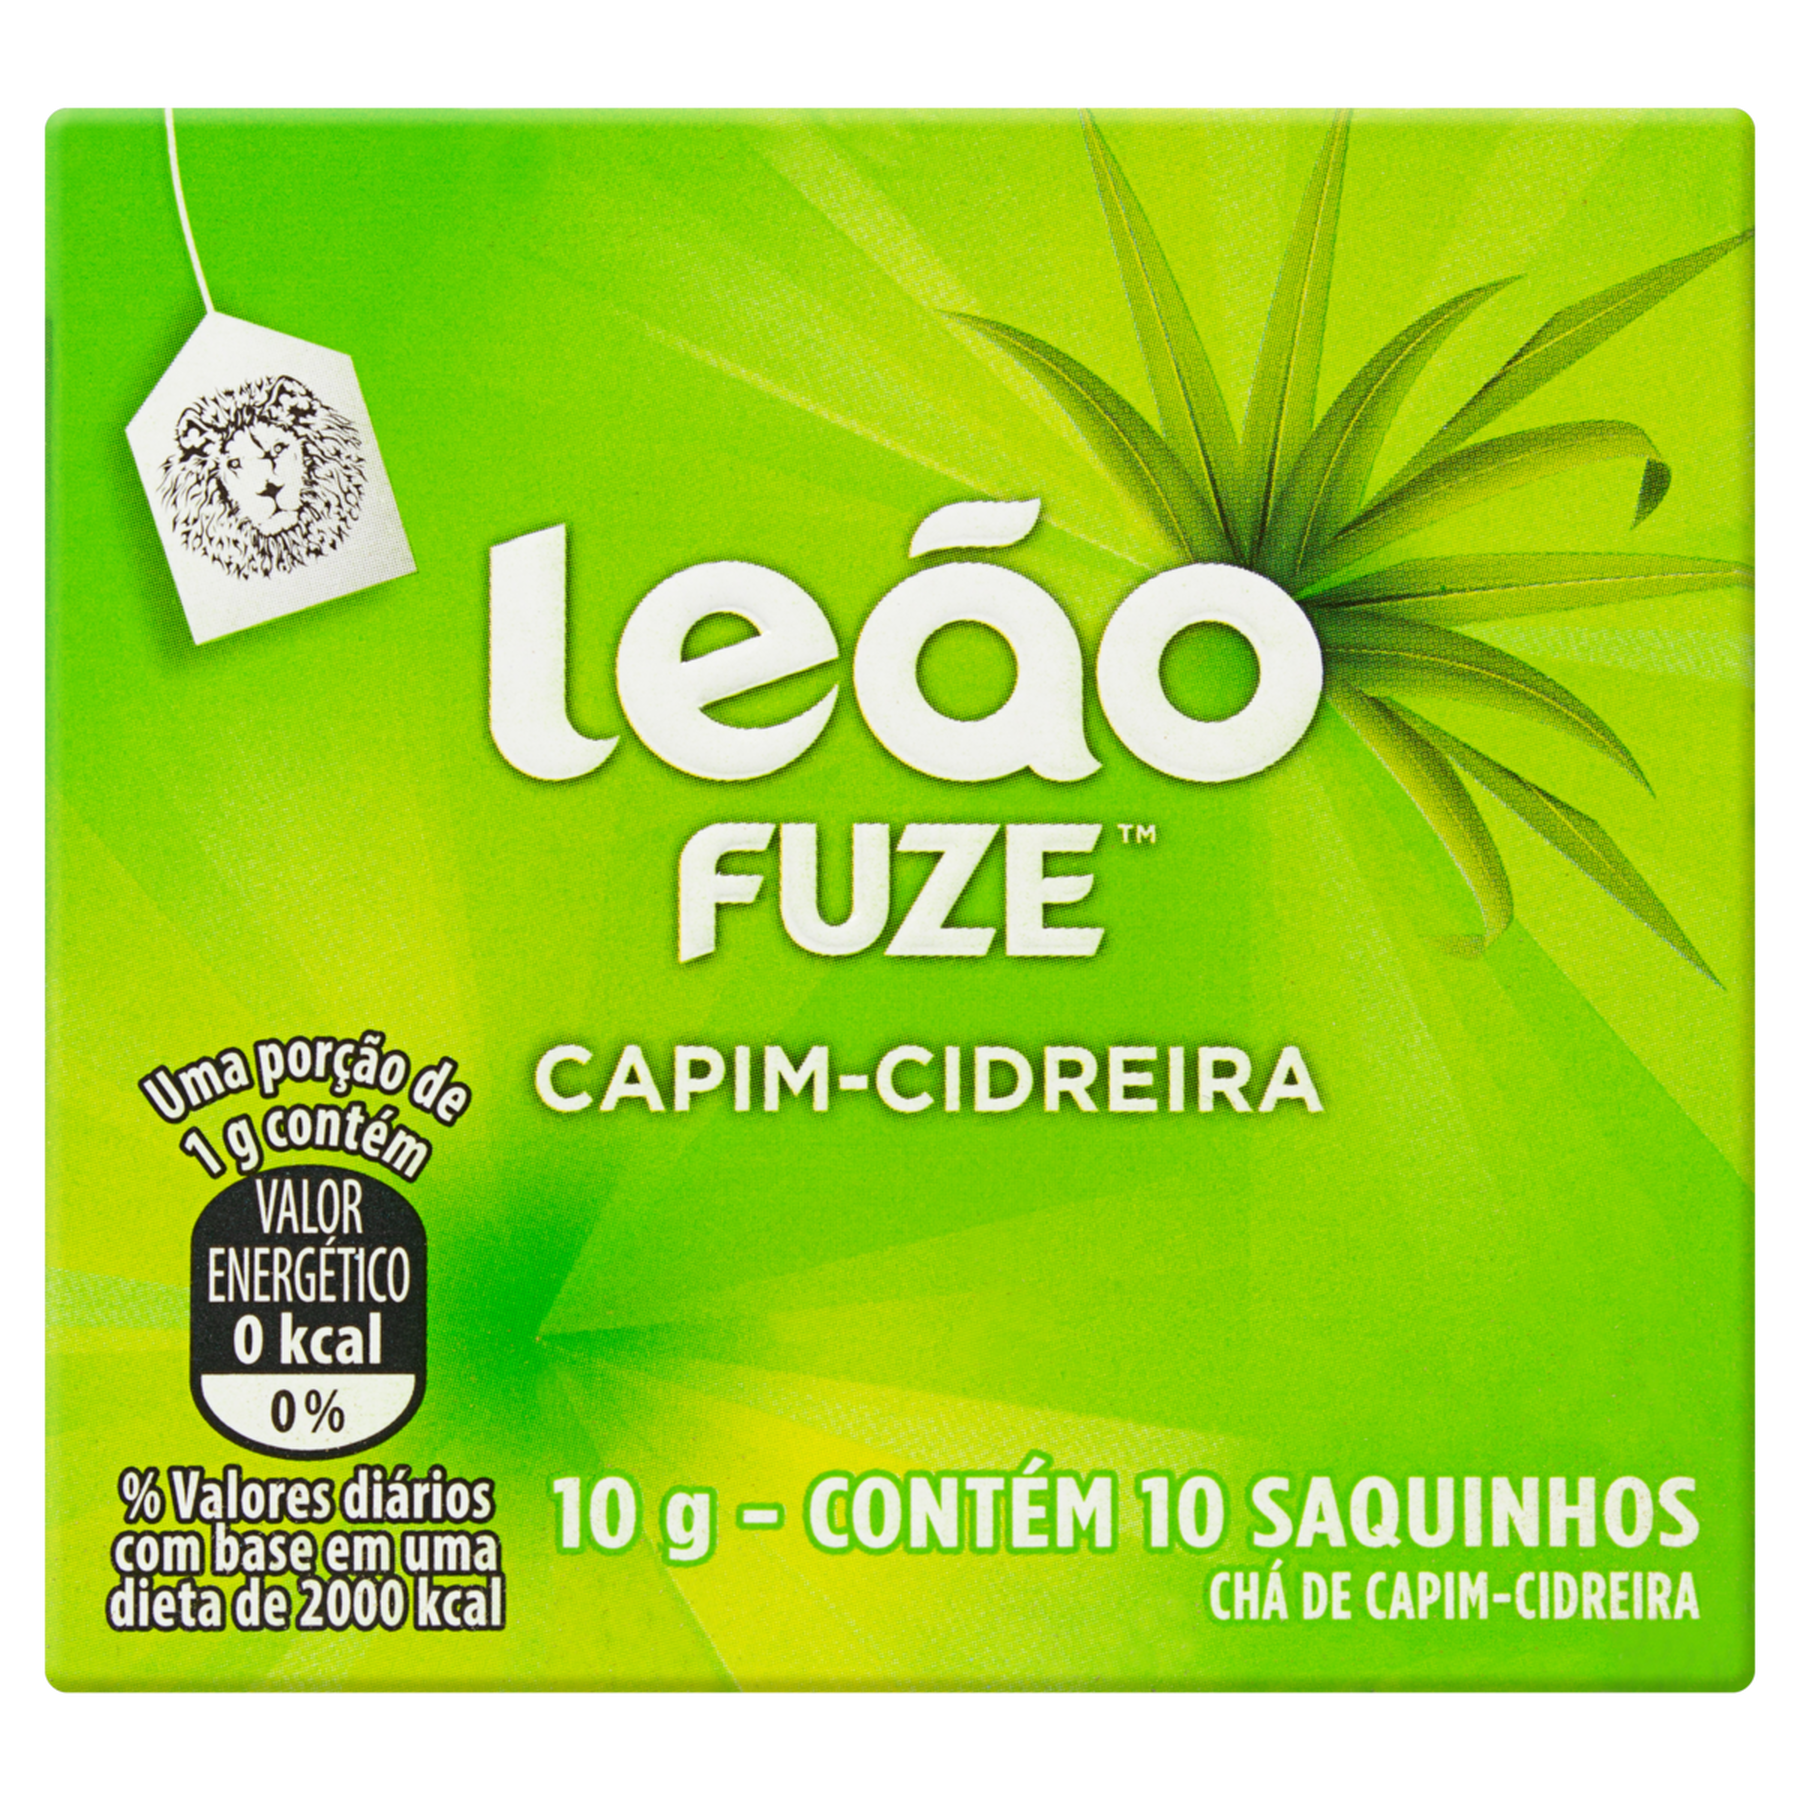 Chá Capim-Cidreira Leão Fuze Caixa 10g 10 Unidades